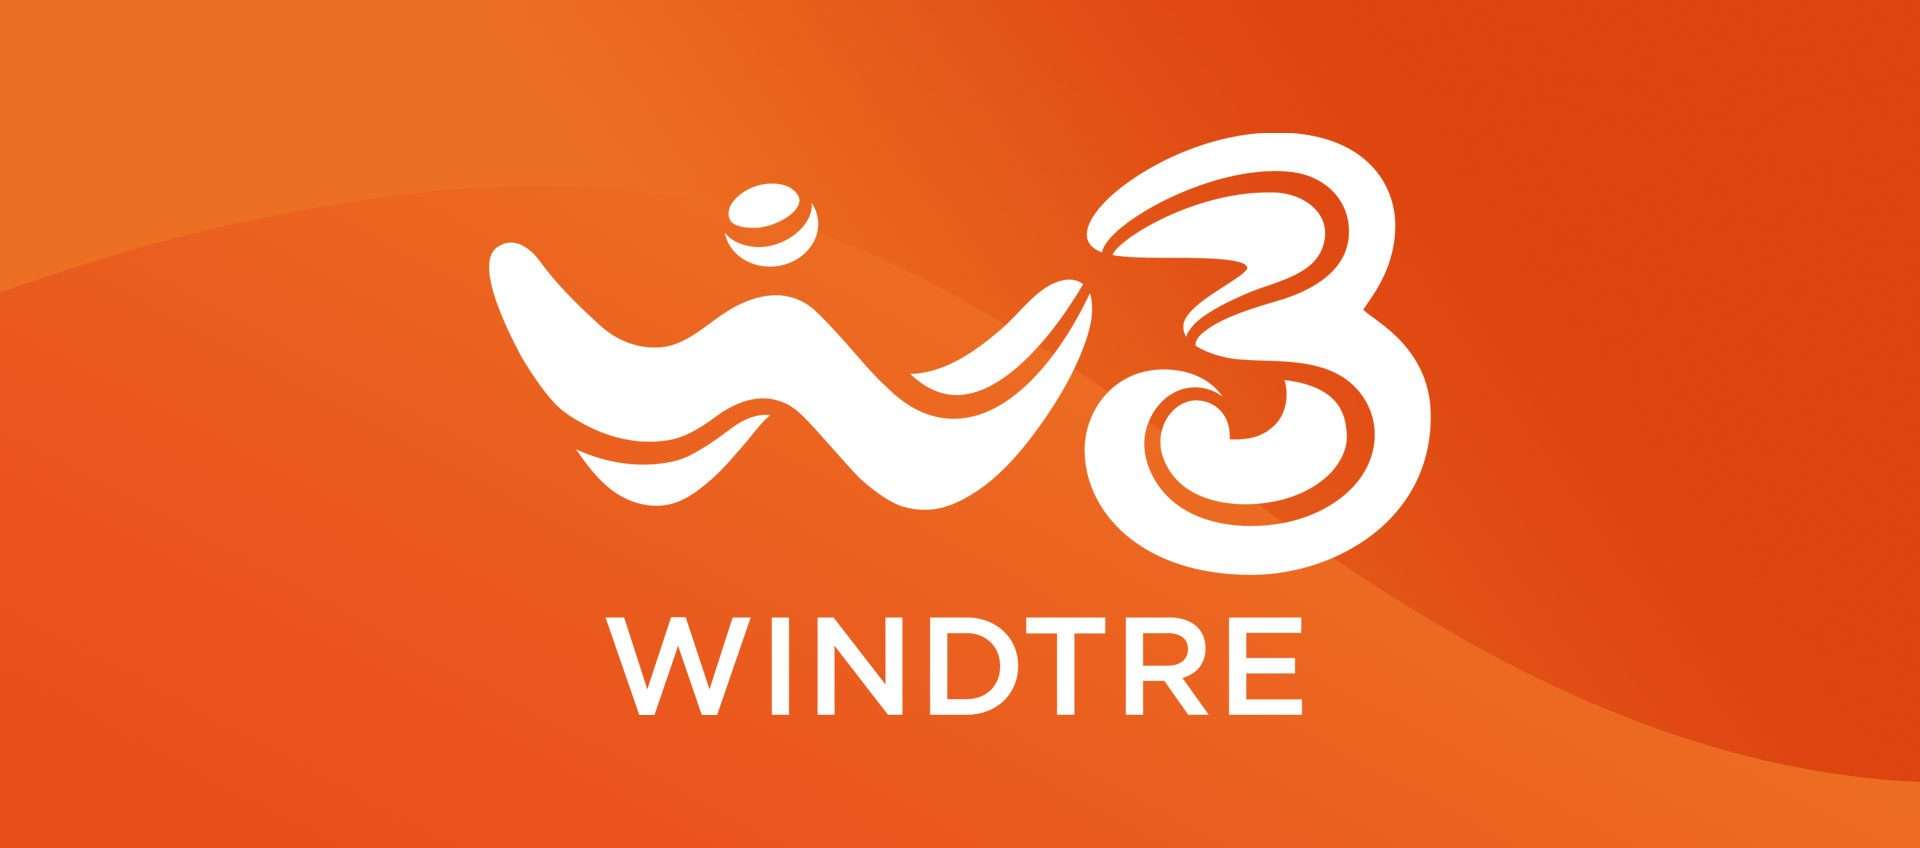 Rimodulazione WindTre in arrivo: aumenti per rete fissa da agosto 2023